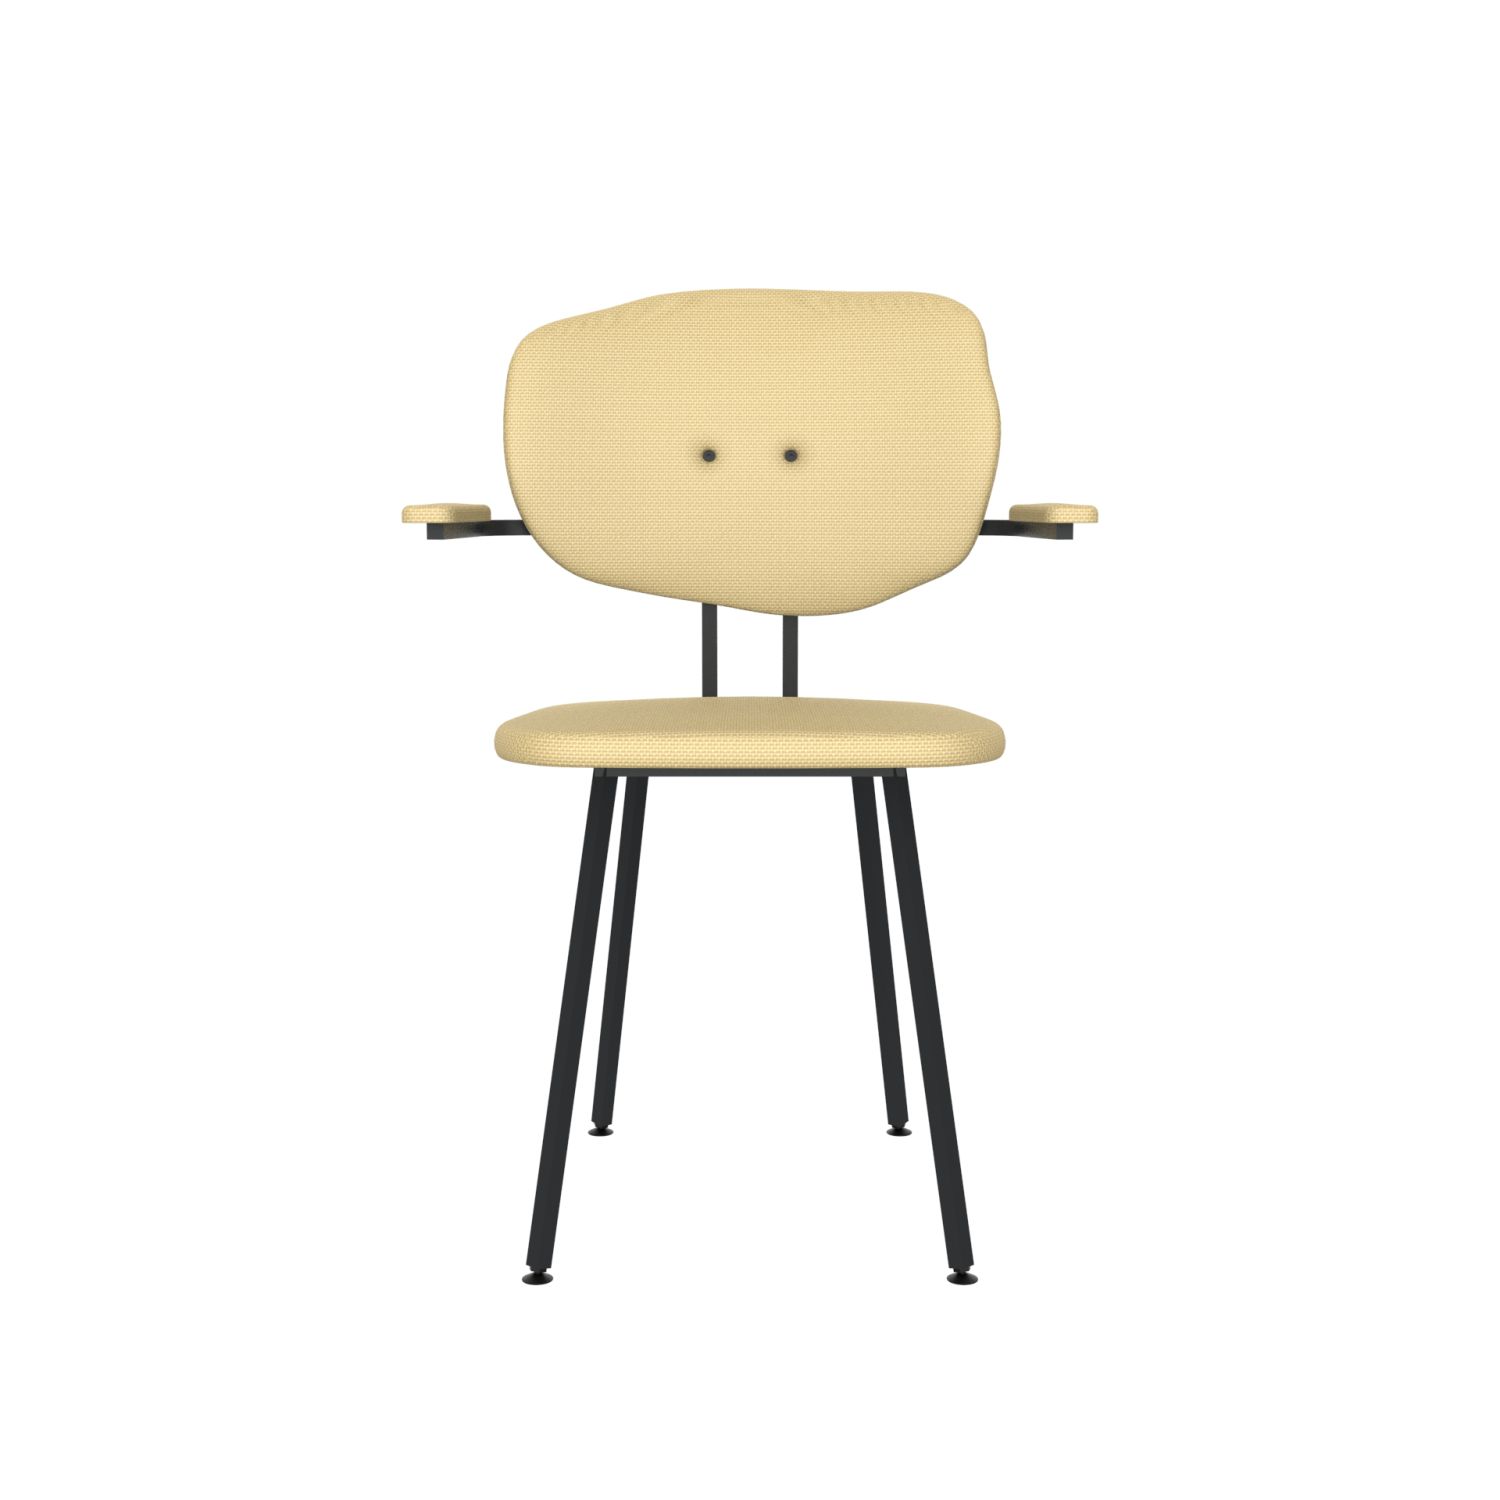 lensvelt maarten baas chair 102 not stackable with armrests backrest f light brown 141 black ral9005 hard leg ends